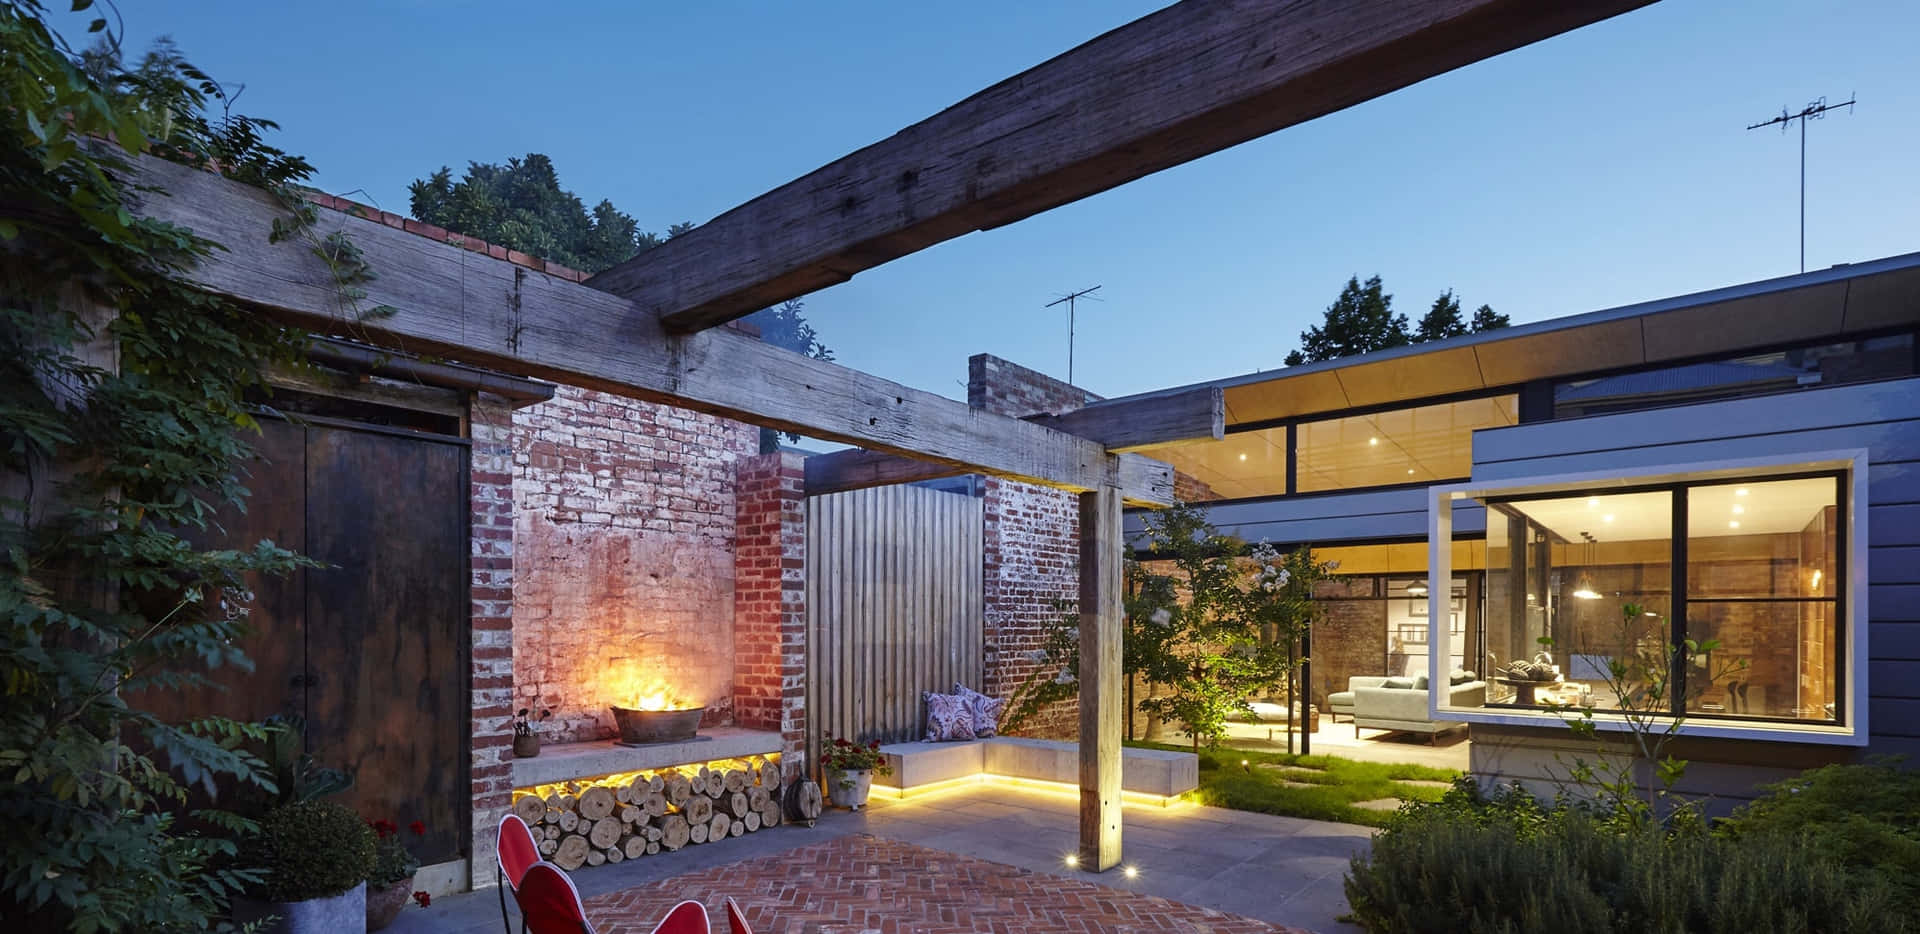 A Modern Backyard With A Brick Fireplace And A Brick Wall